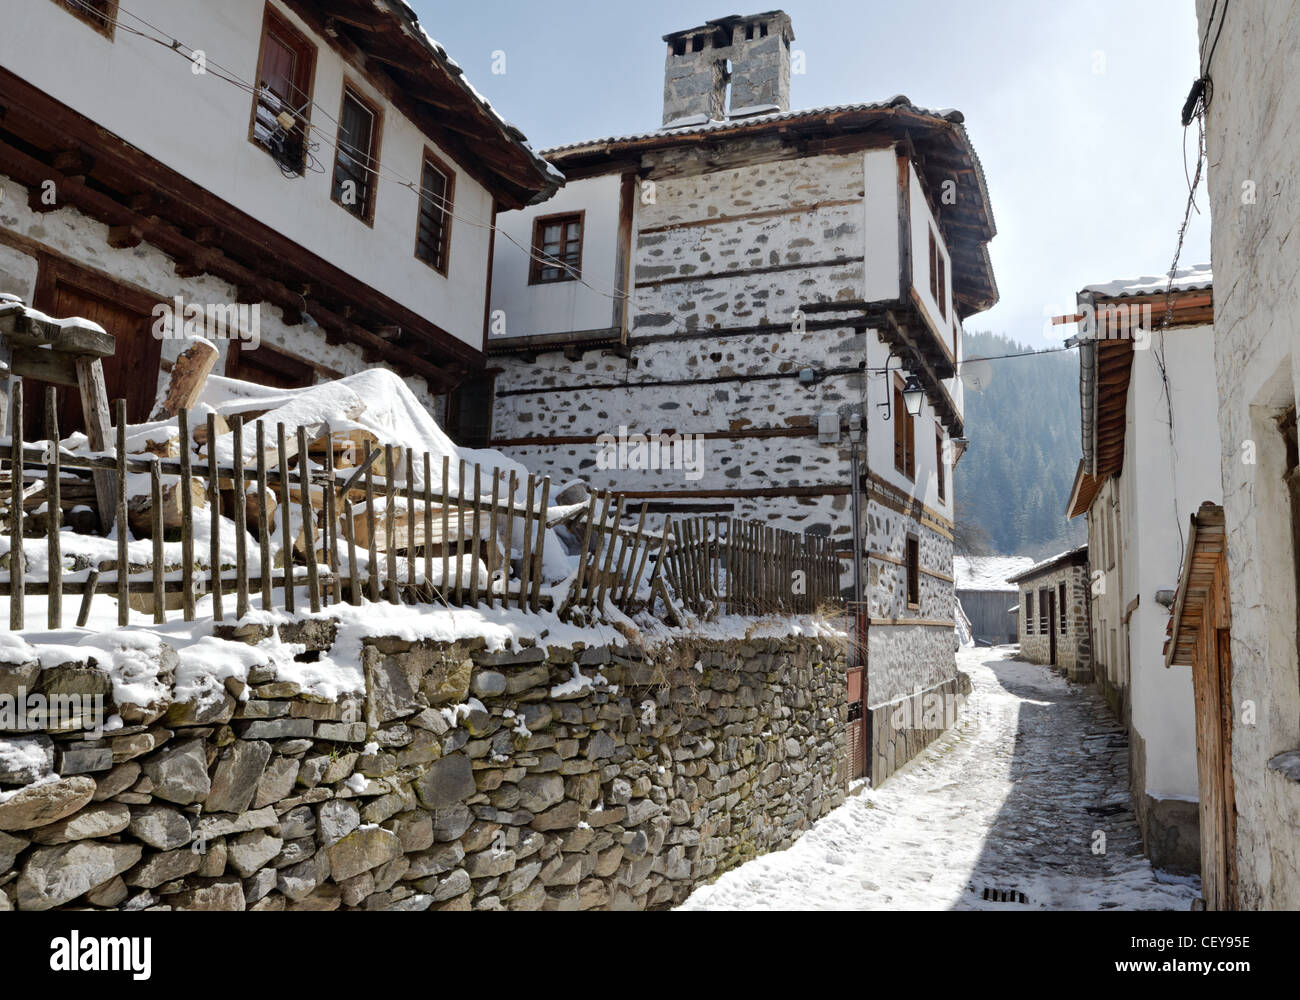 Traditional houses from Shiroka laka village, Bulgaria Stock Photo